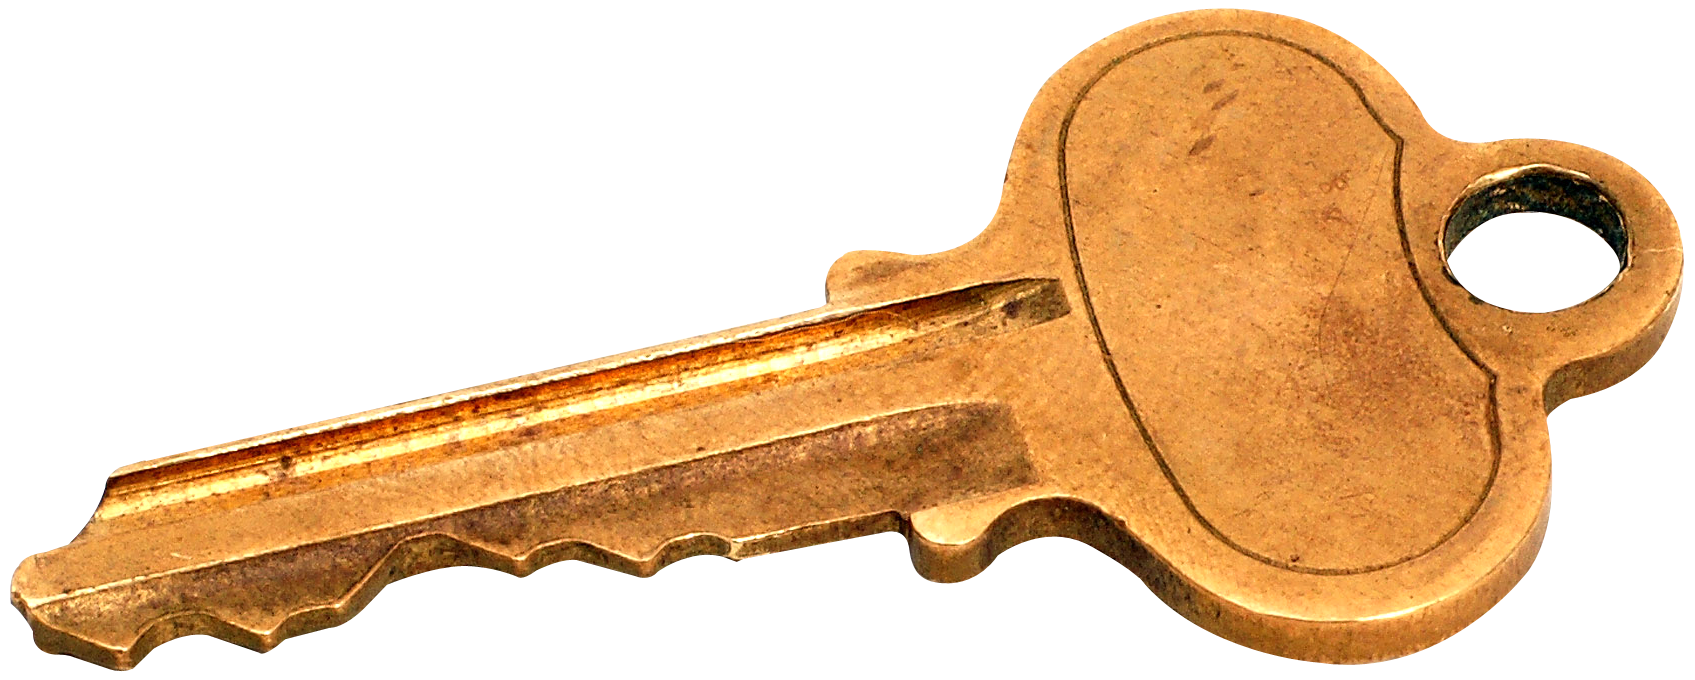 Key Free PNG Image